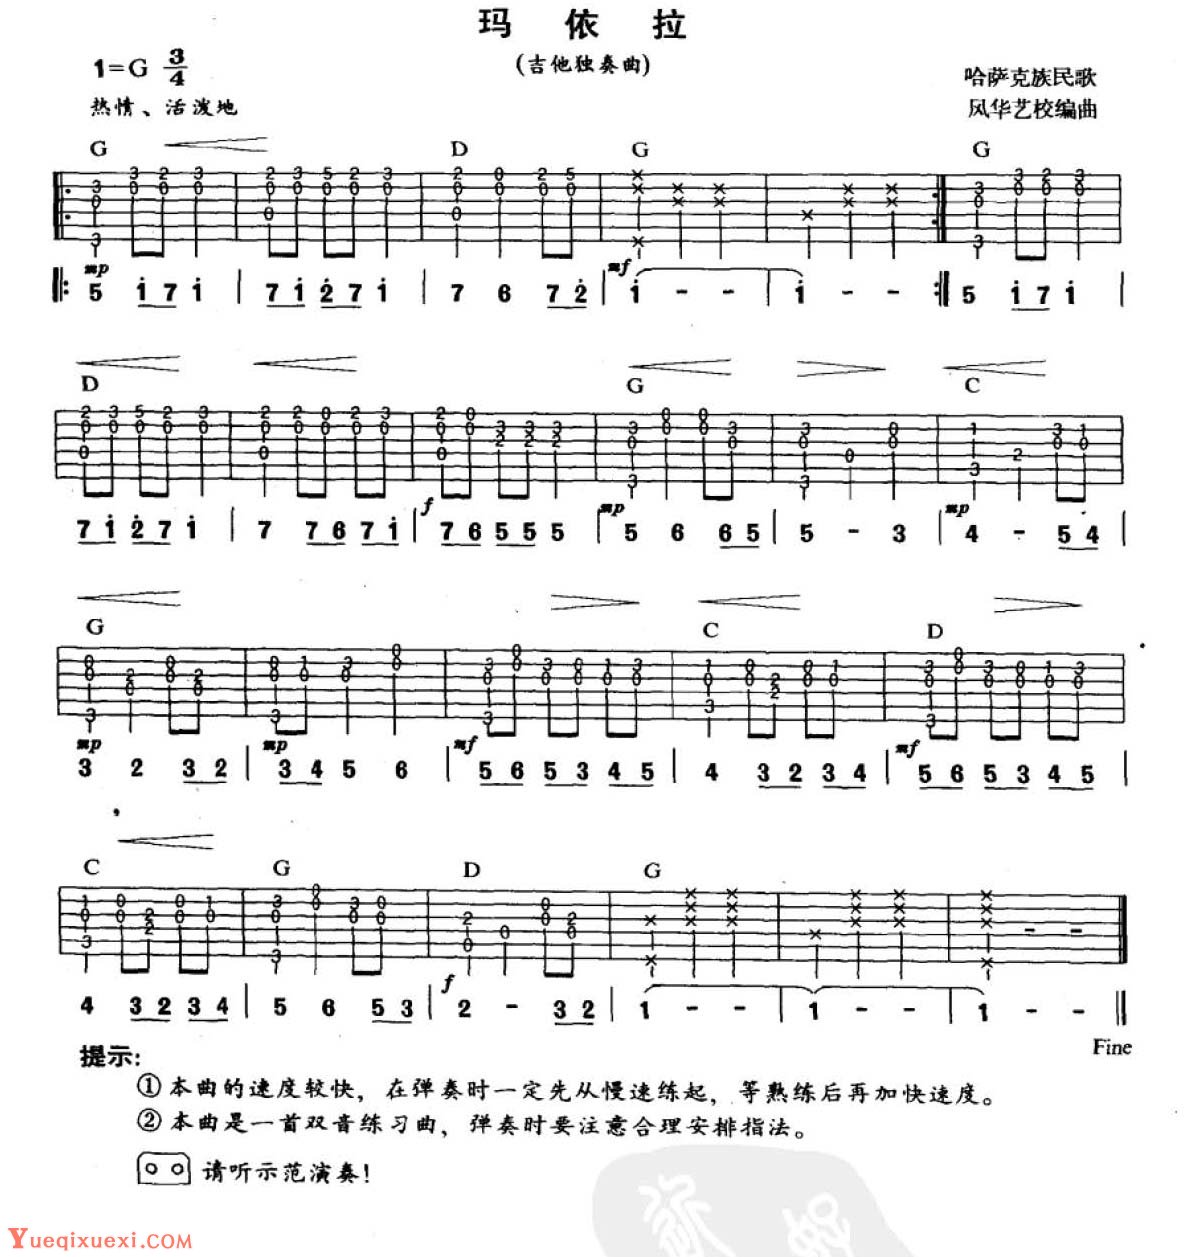 吉他中级练习曲《玛依拉》中国乐曲